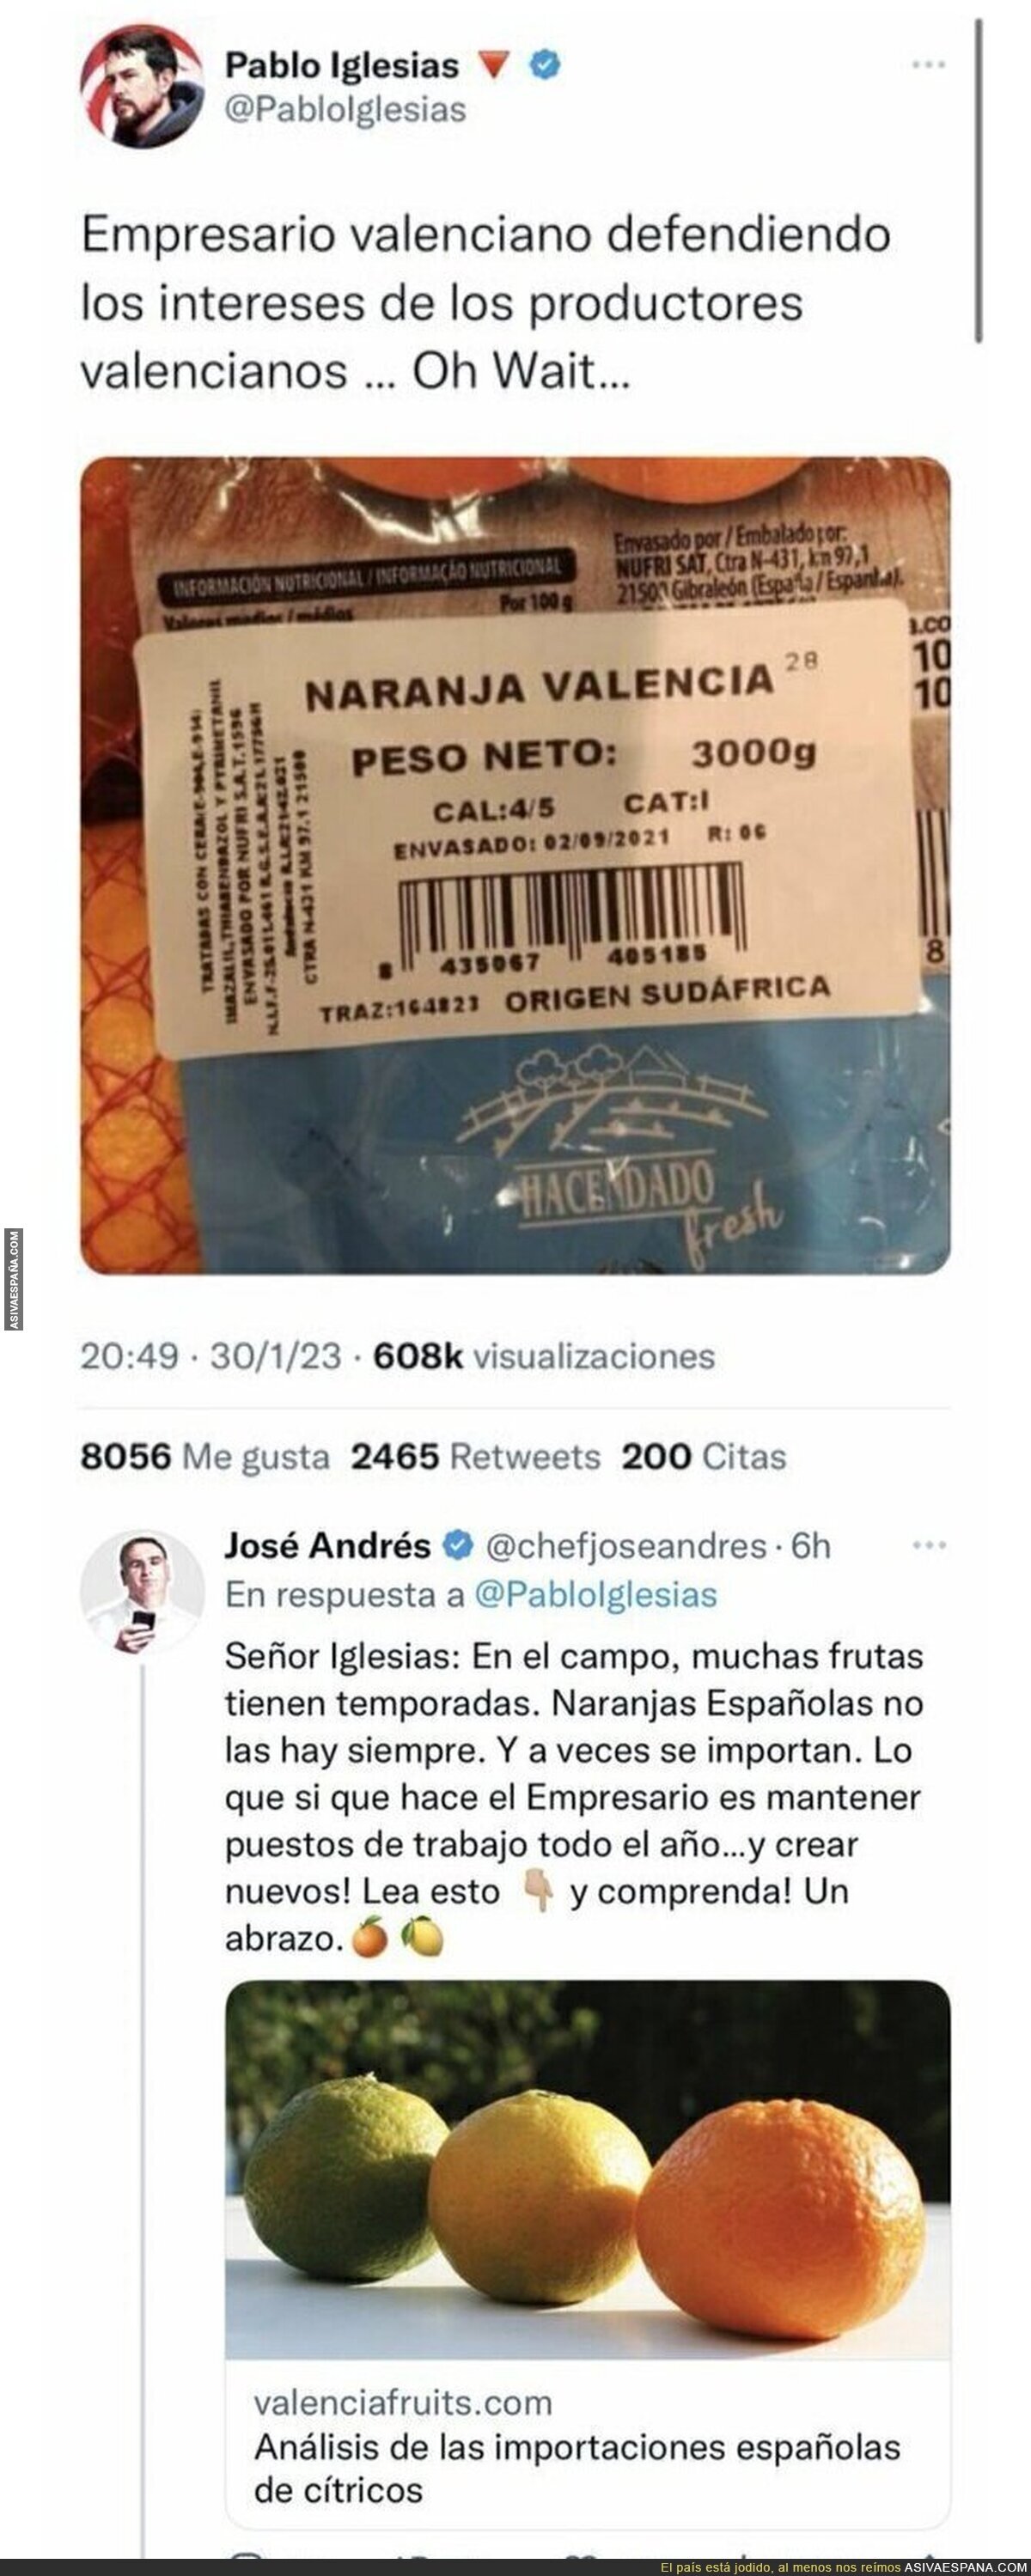 El Chef José Andrés responde a Pablo Iglesias por hablar así de las naranjas valencianas